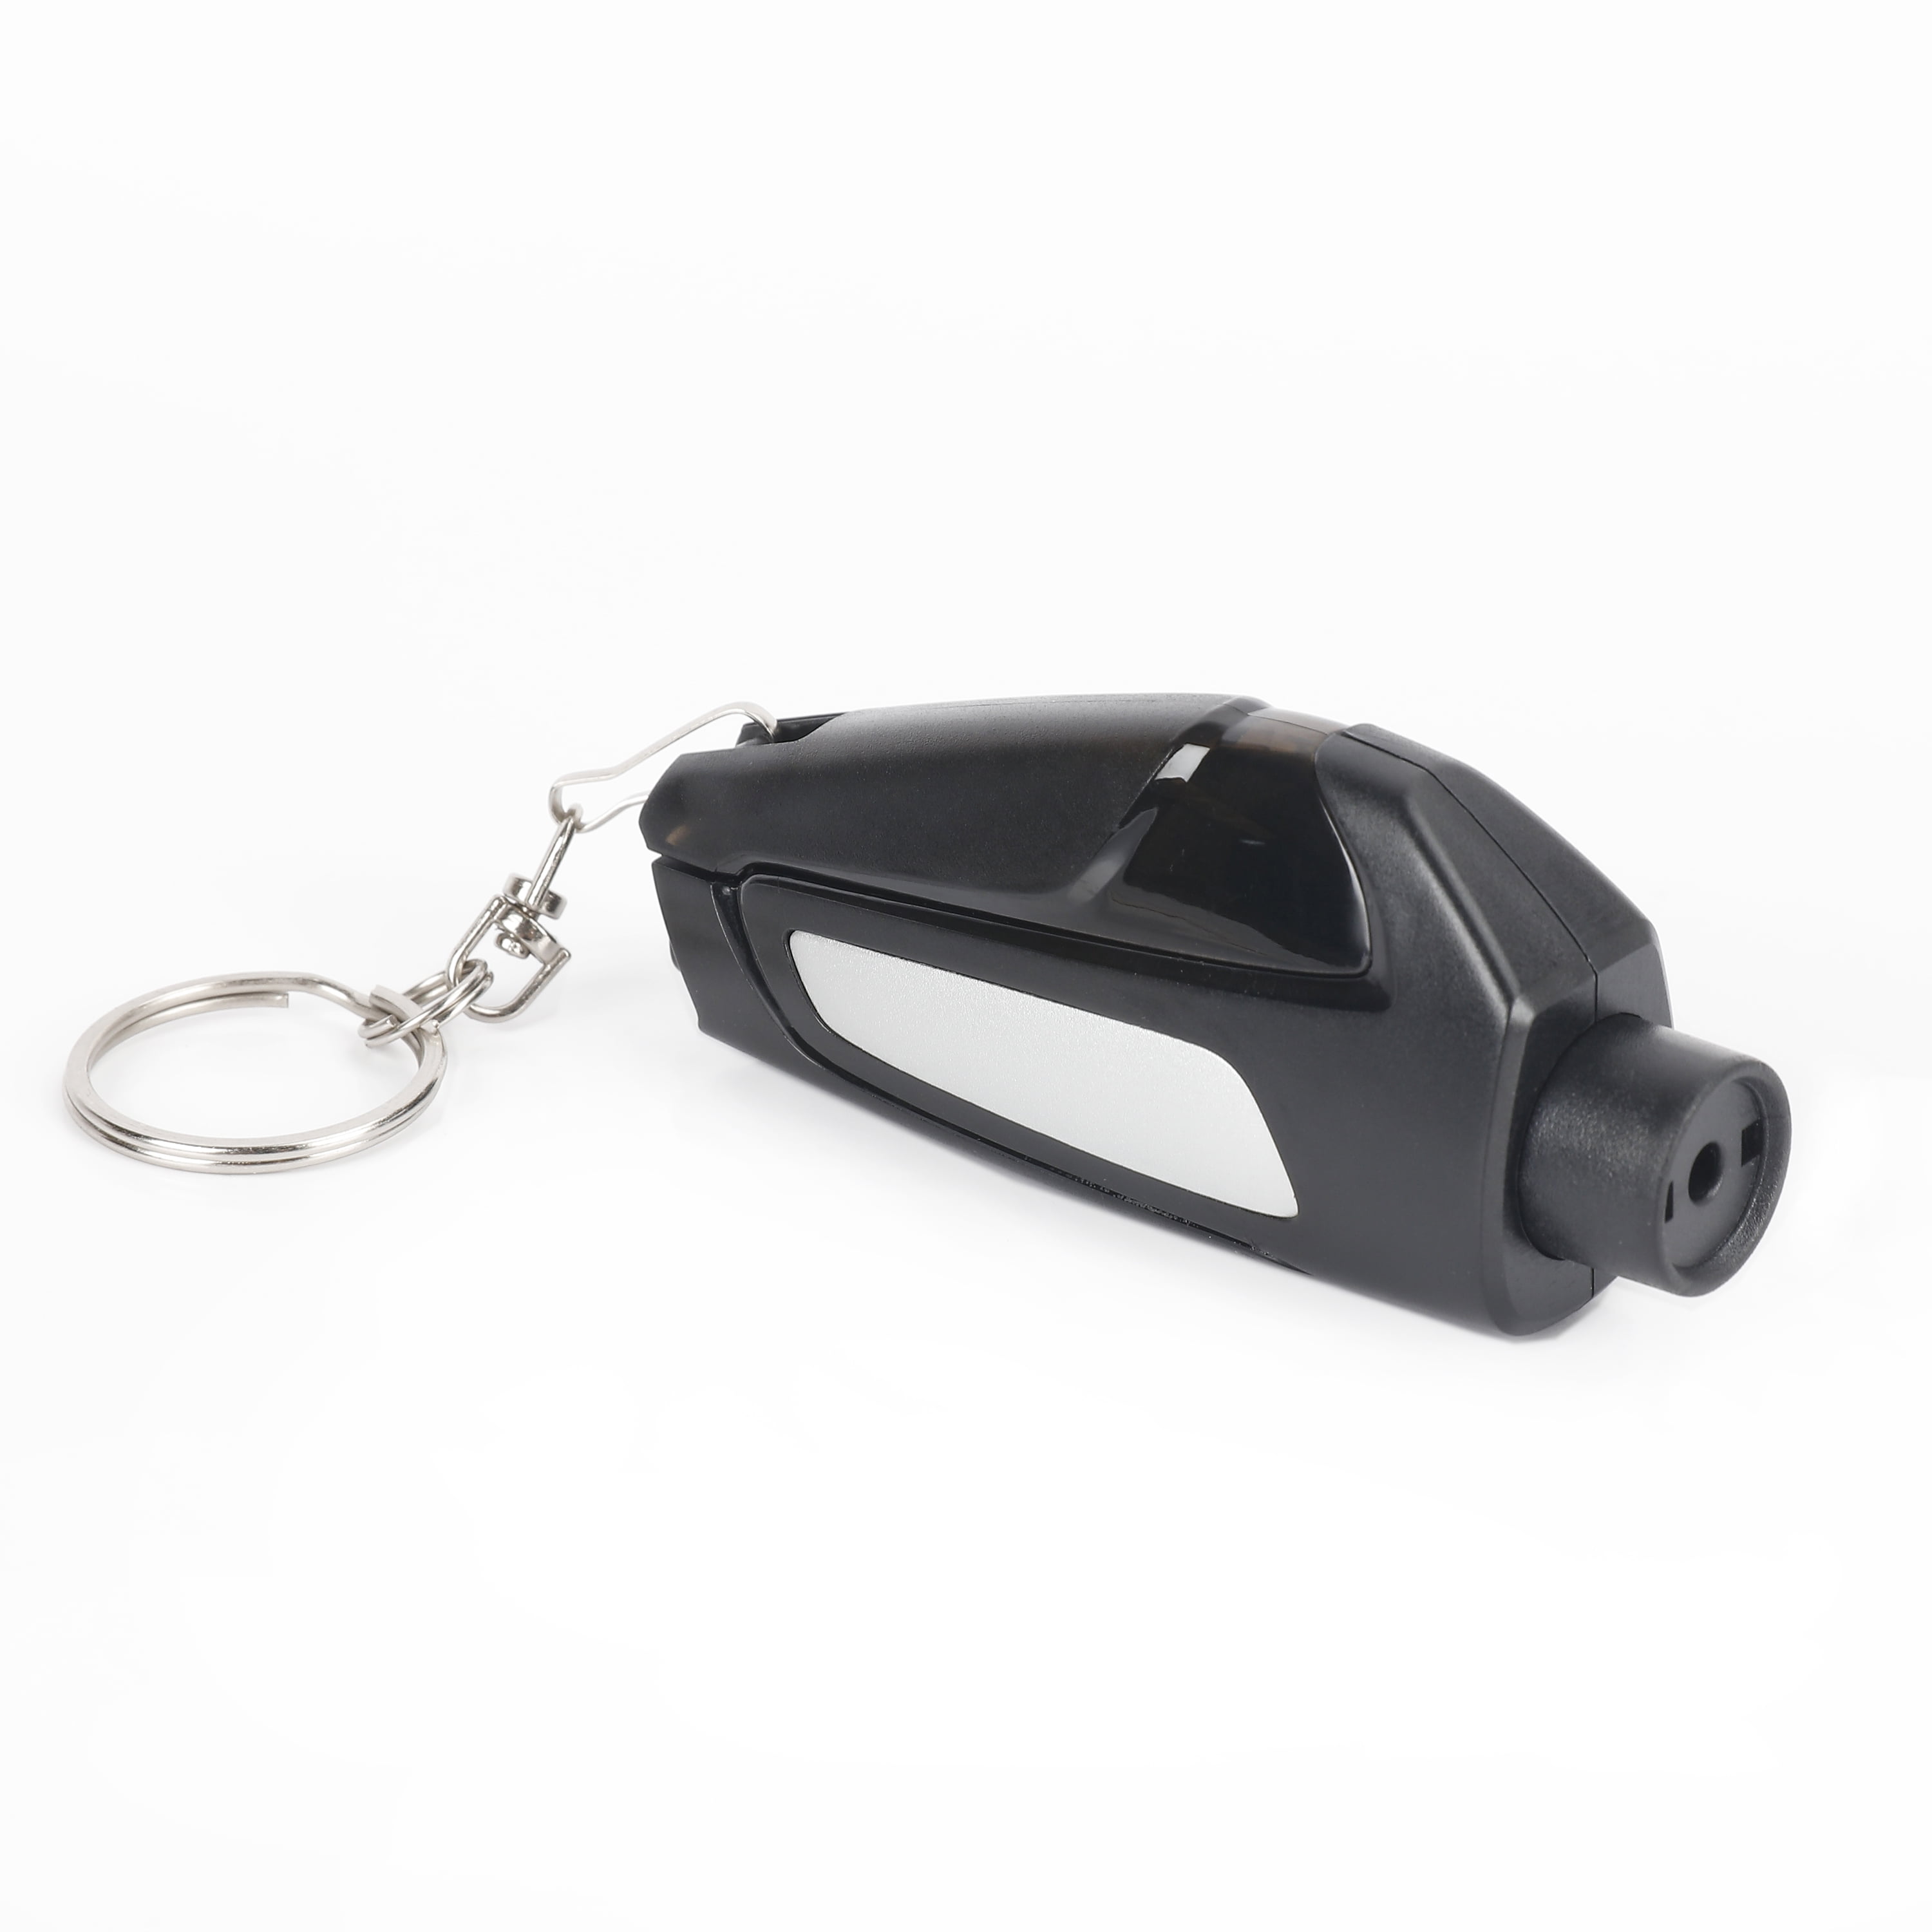 Auto Drive 2-IN-1 Rescue Tool Seatbelt Cutter & Window Breaker, Model 7838